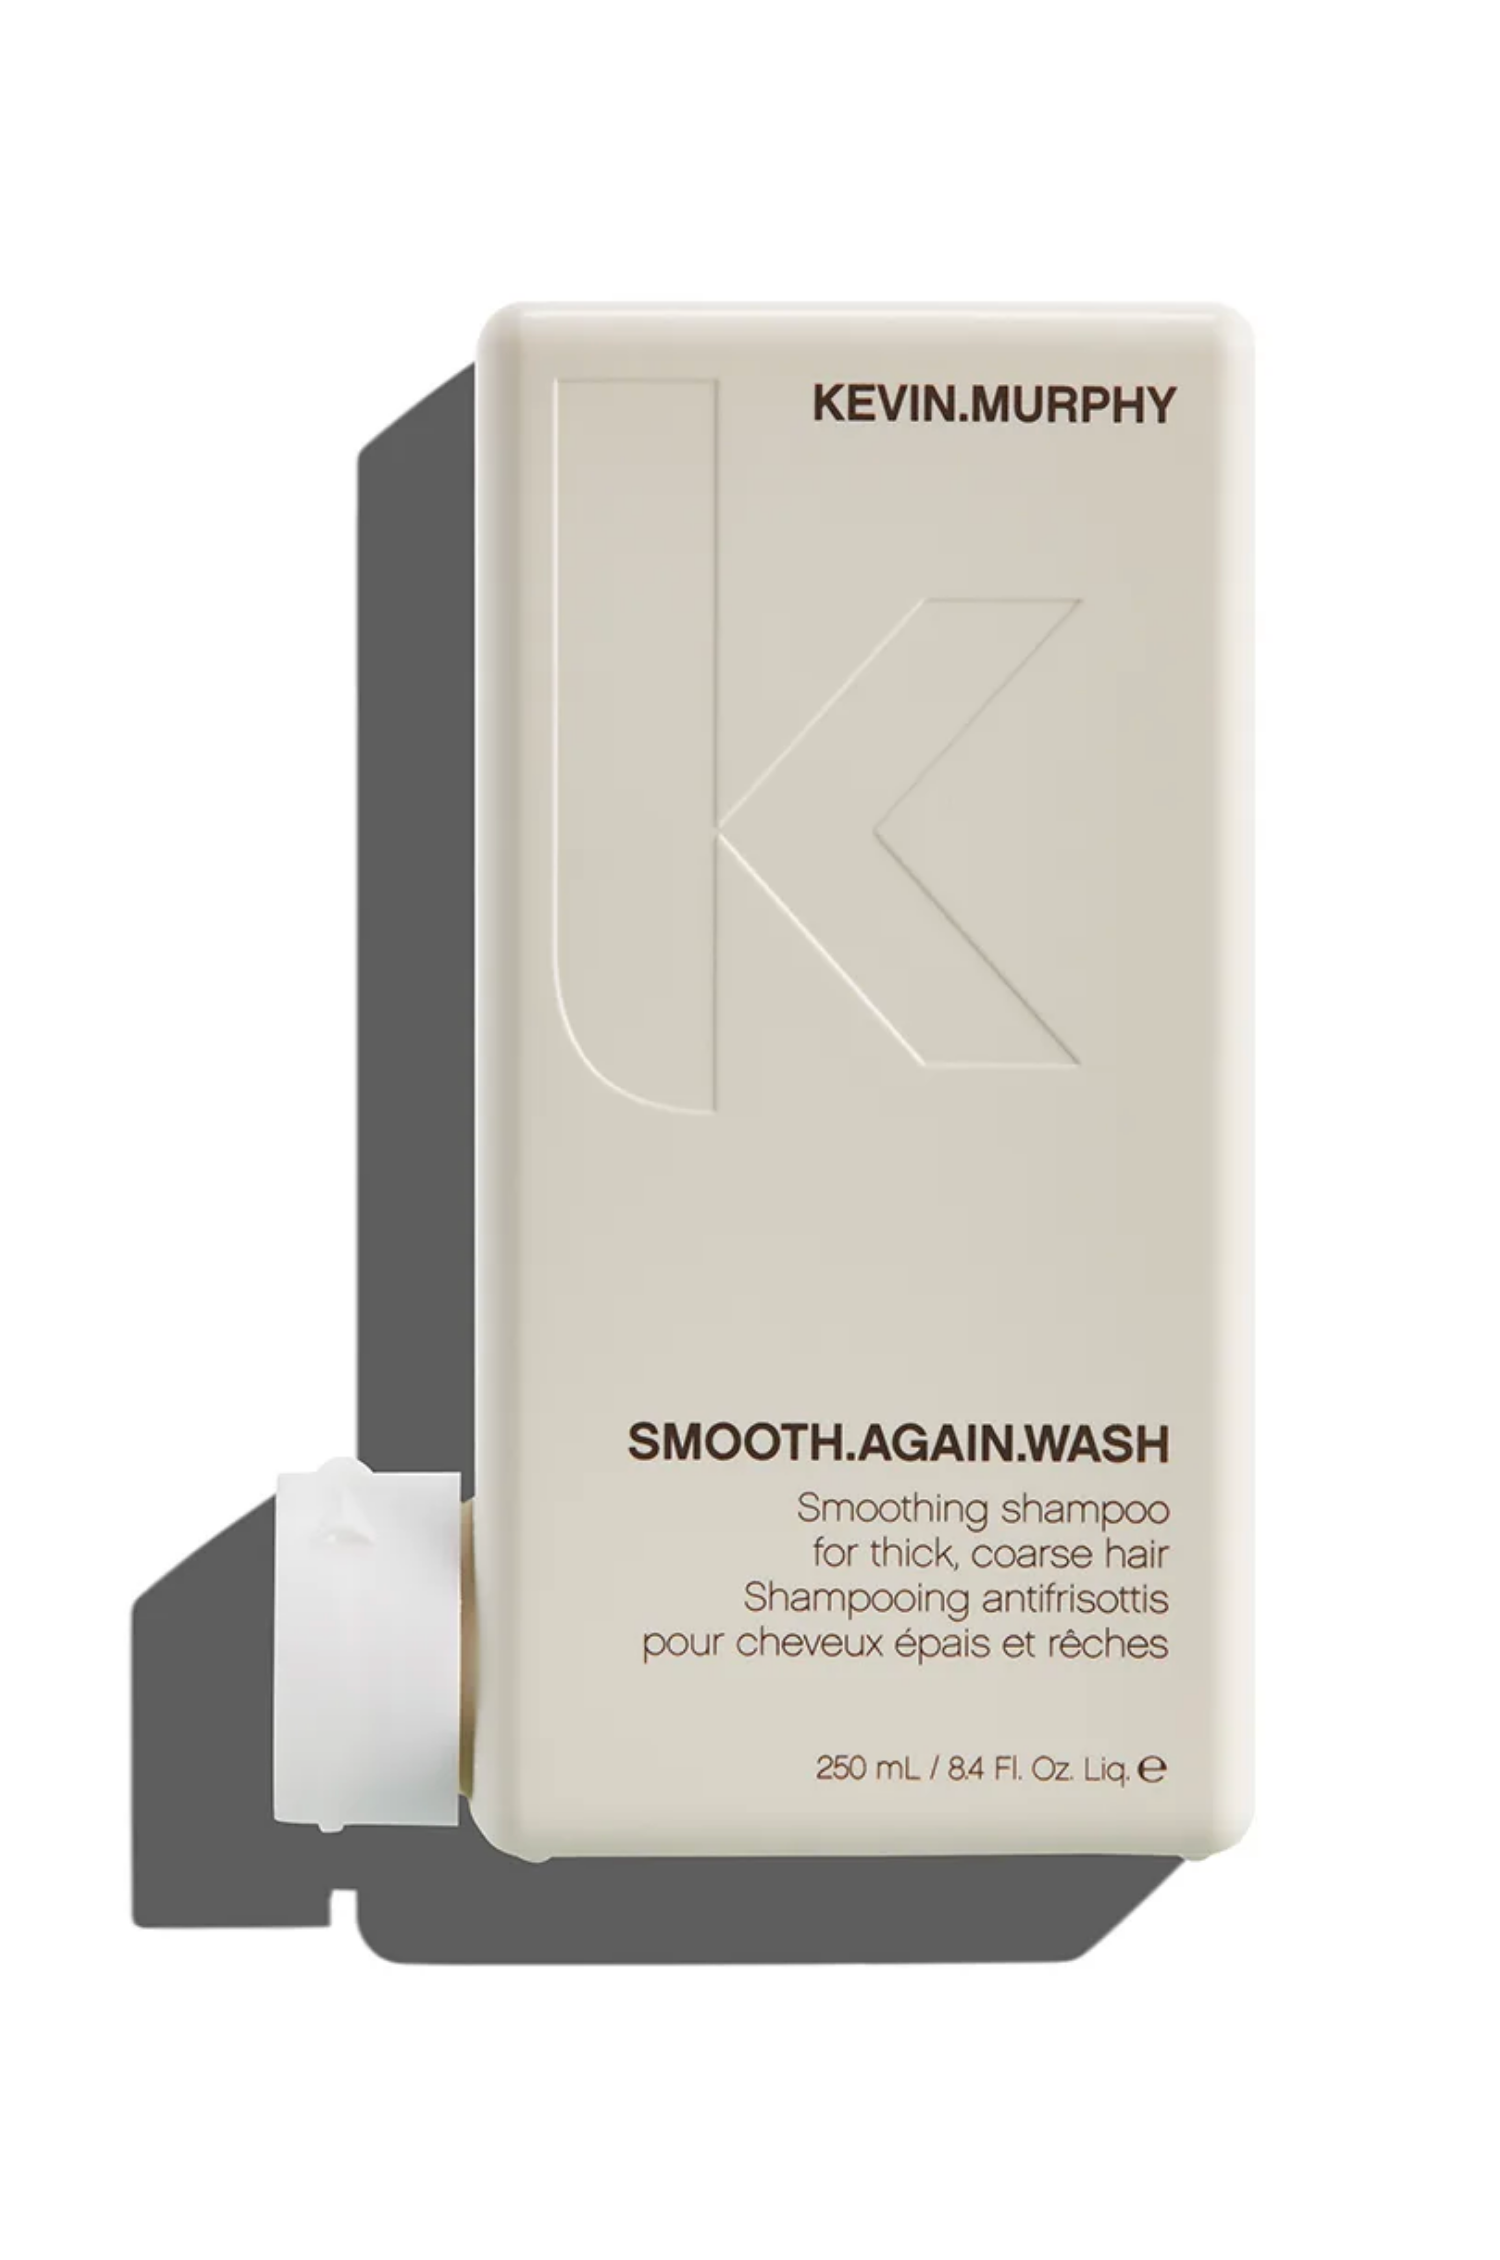 Shampooing antifrisottis pour cheveux épais et rêches Kevin Murphy Smooth Again Wash - Crème Salon